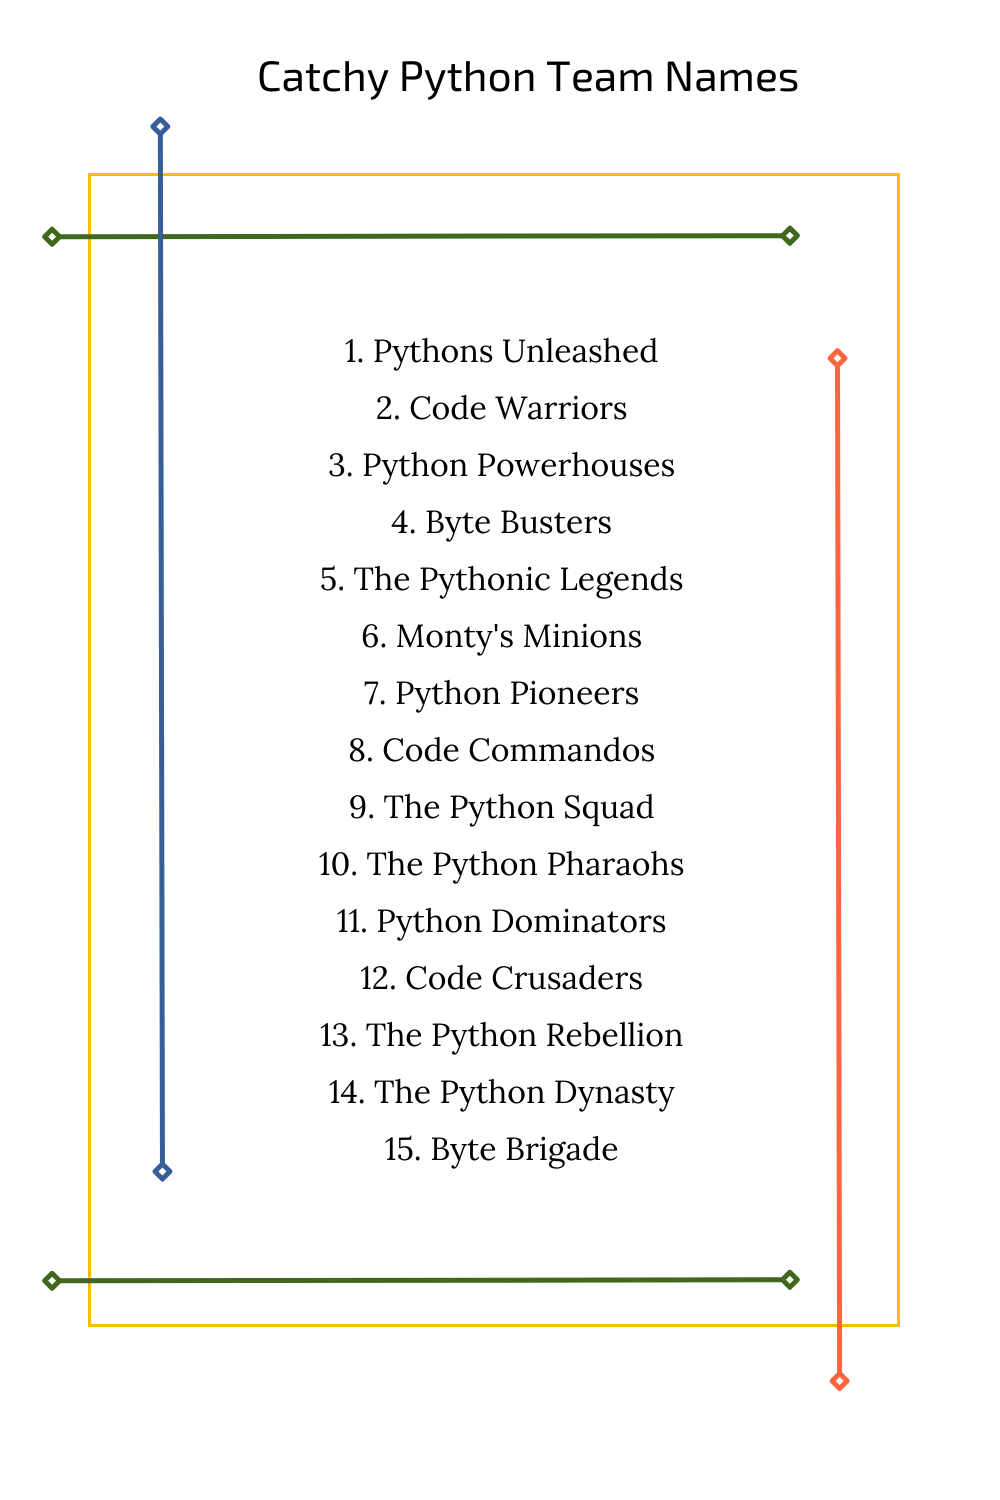 Catchy Python Team Names